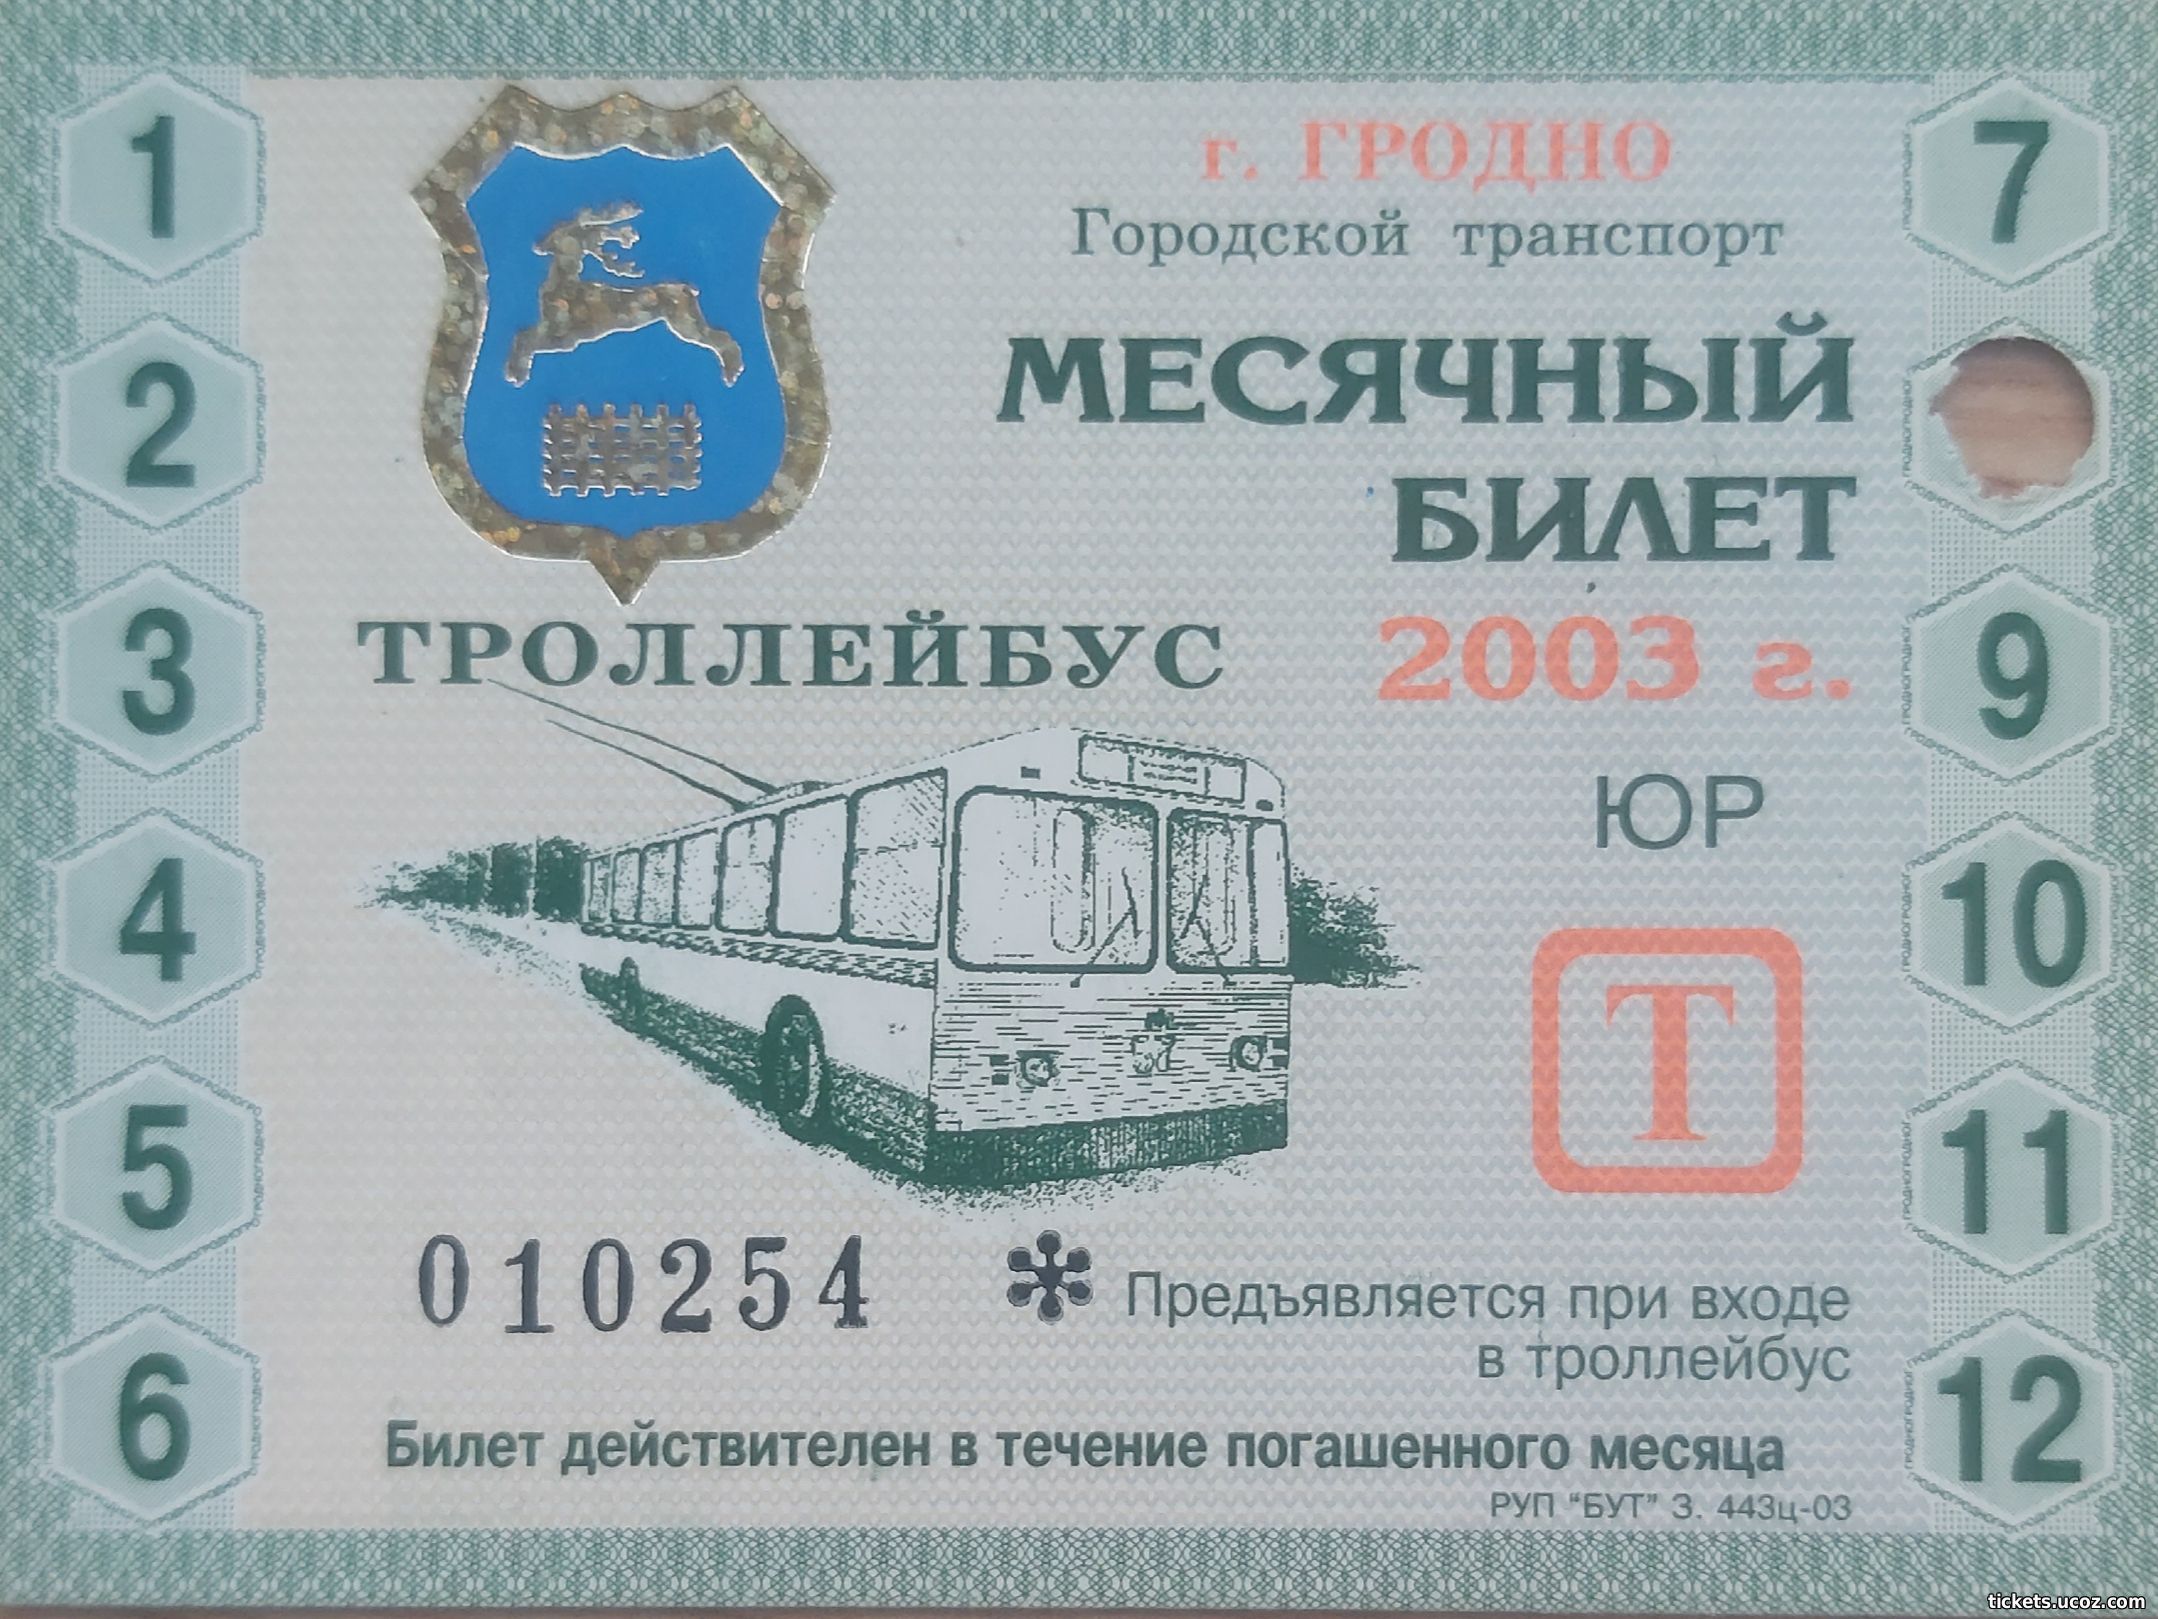 Покупка проездного билета. Транспортные билетики. Коллекция транспортных билетов. Билет в галерею. Транспортный билет 1993 комитет пассажирского транспорта.